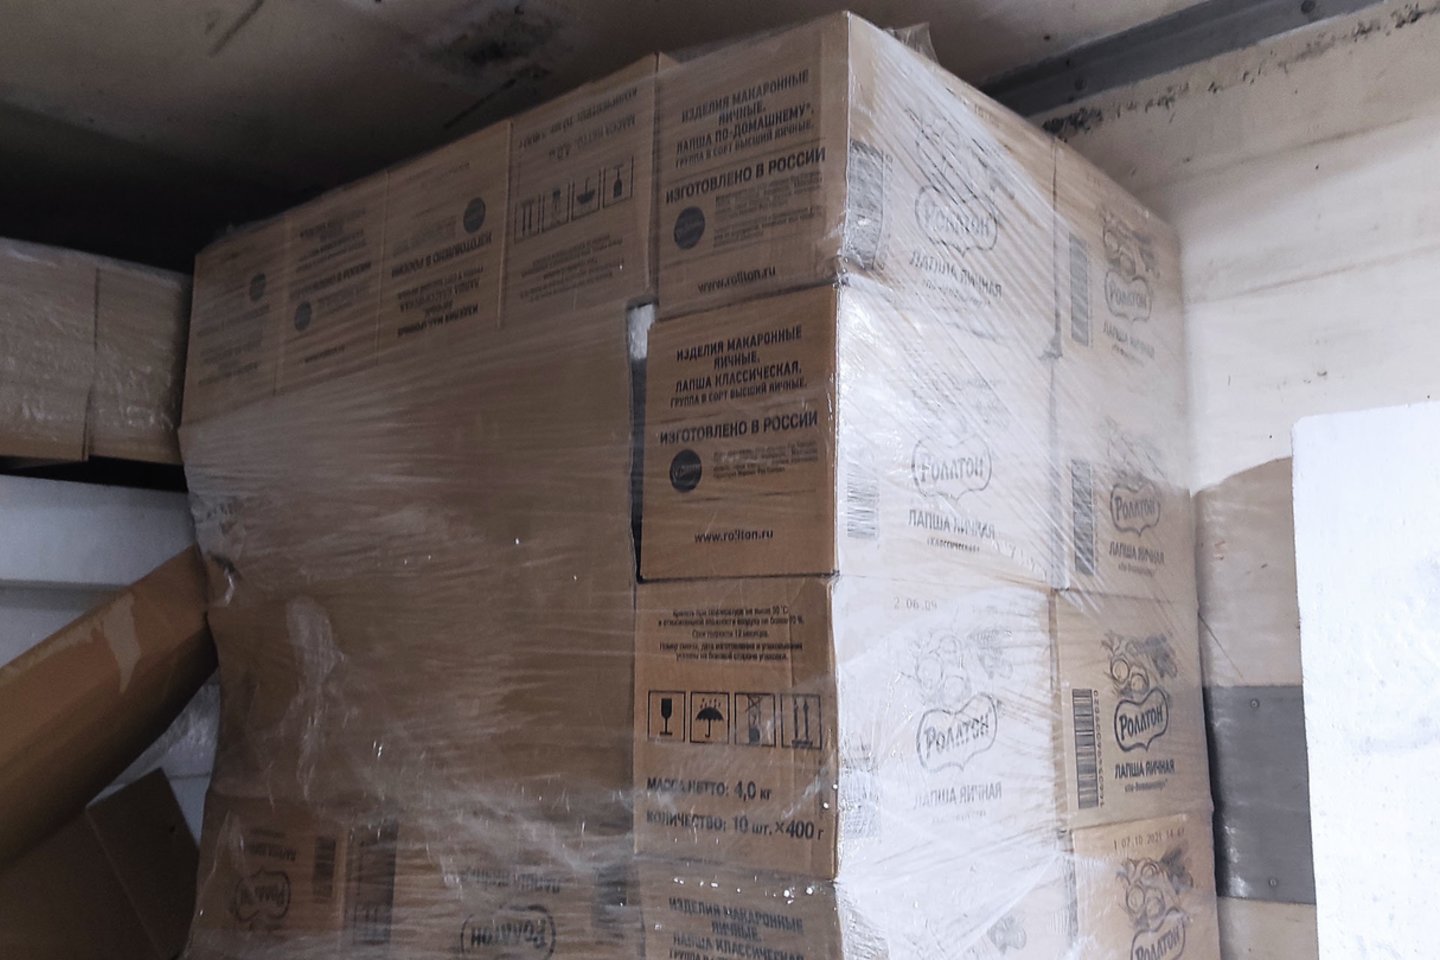  Lavoriškėse vietoj makaronų krovinio muitininkai aptiko apie pusantro milijono eurų vertės cigaretes.<br> MKT nuotr.